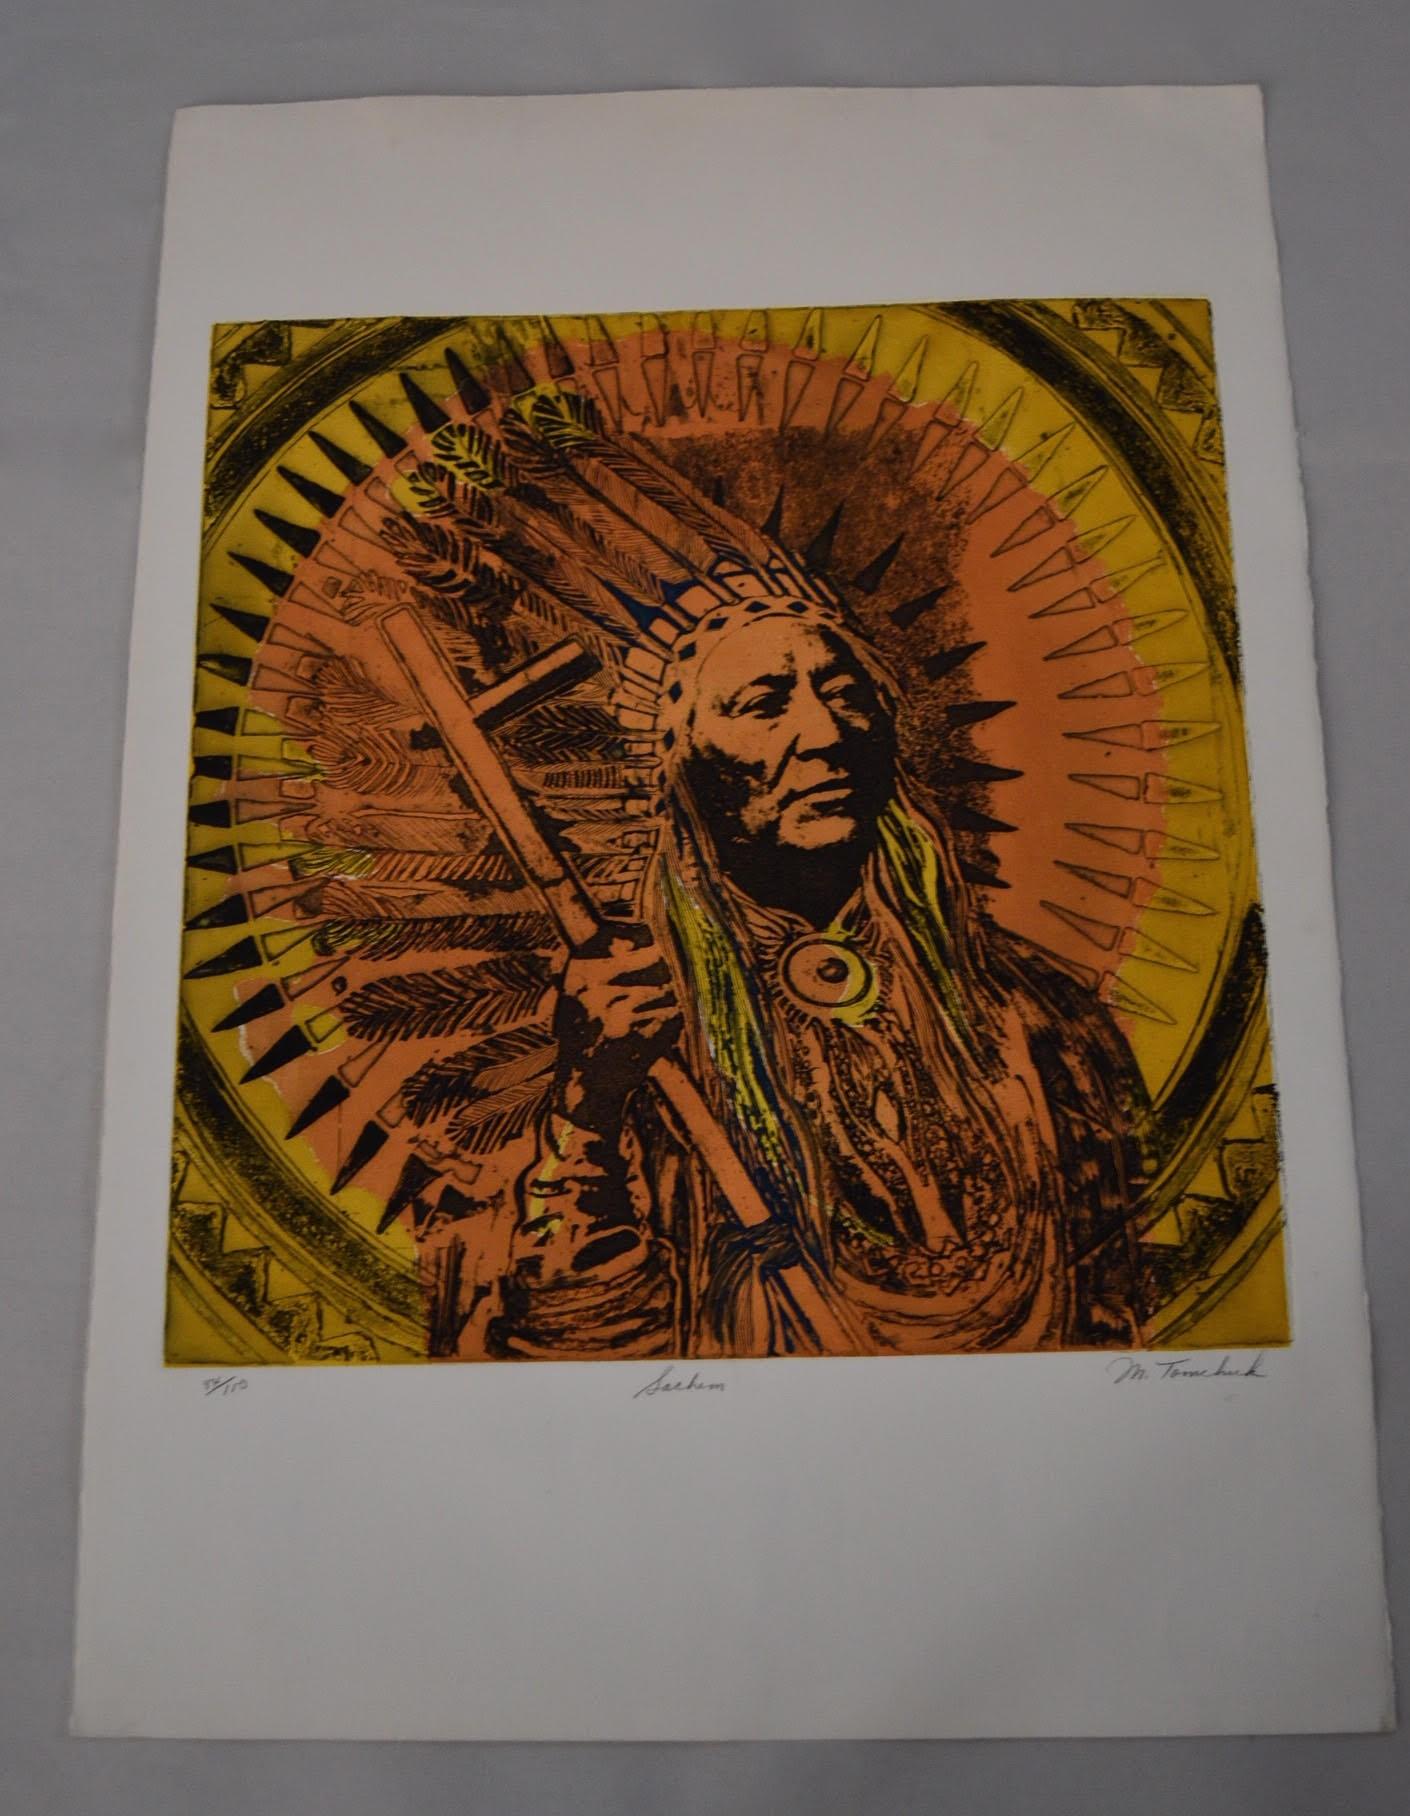 Une magnifique et forte impression ou image de l'artiste d'origine canadienne Marjorie Tomchuk d'un chef amérindien. 

L'épreuve est signée au crayon, titrée (Sachem) et numérotée (84/100) par l'artiste.

Il s'agit clairement d'un travail qui